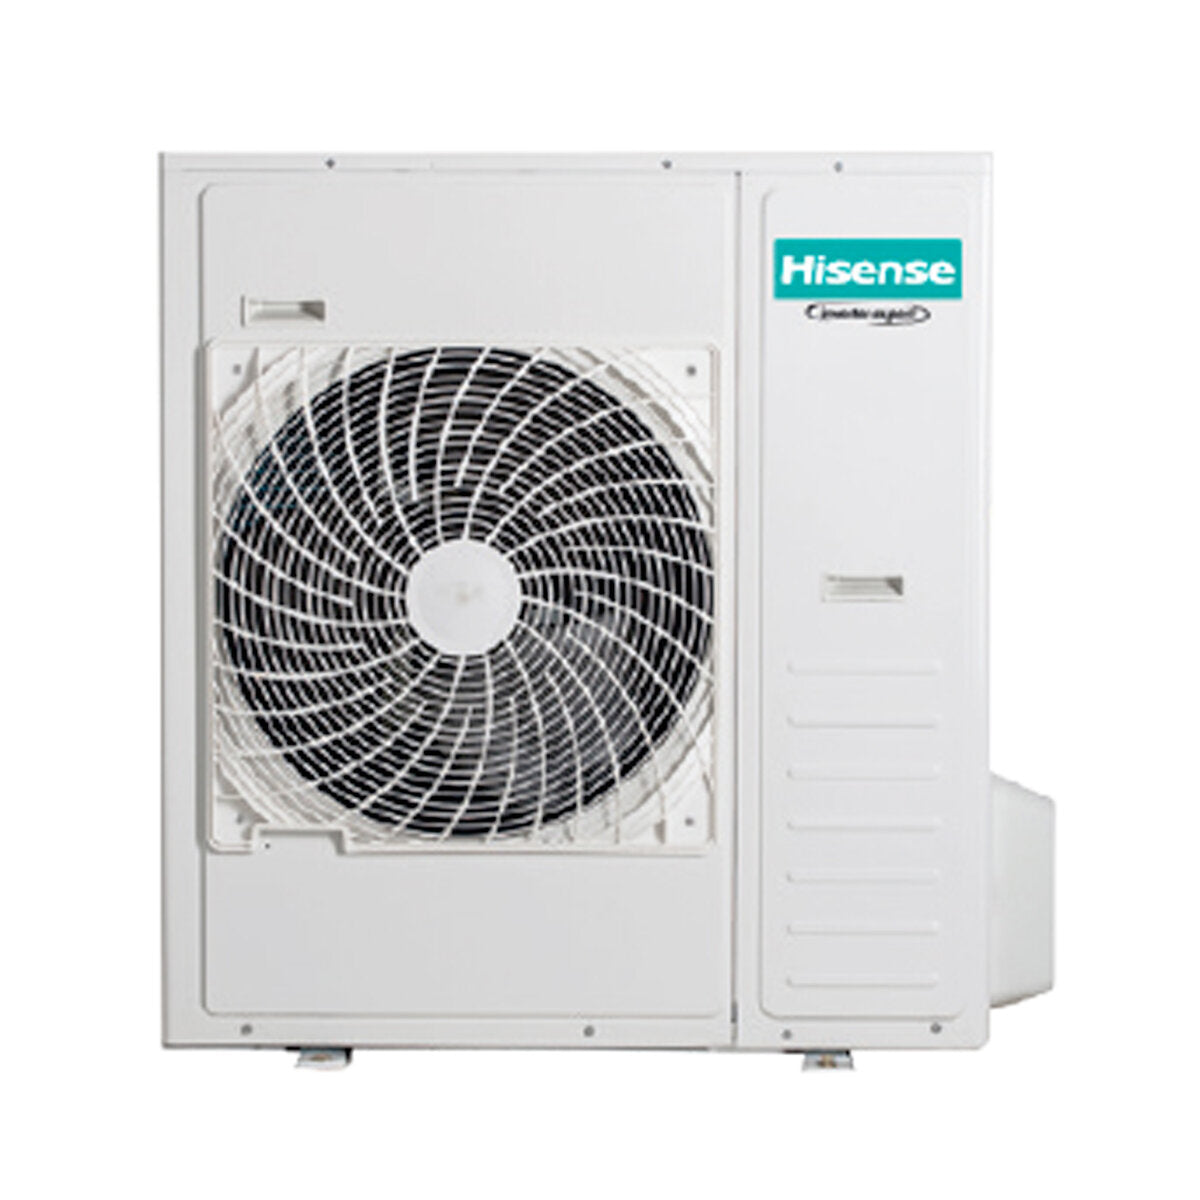 Hisense Hi-Comfort climatiseur split quadri 7000 + 12000 + 12000 + 24000 BTU wifi inverter unité extérieure 12,5 kW